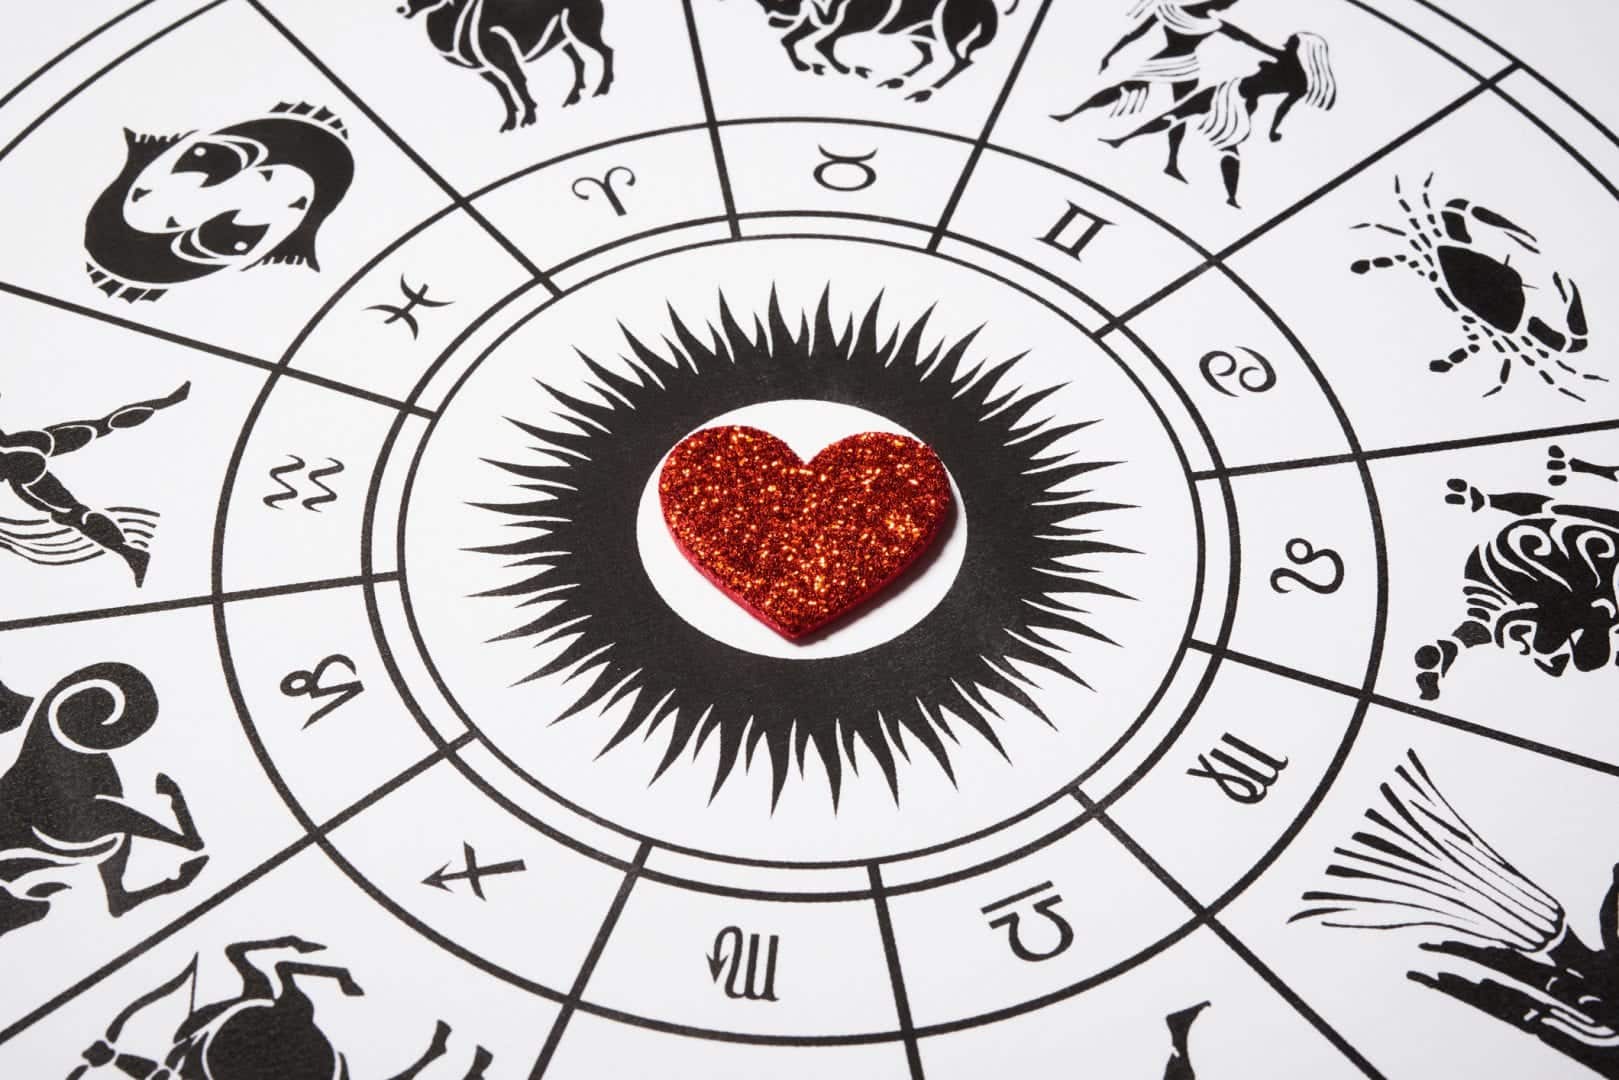 Quais signos do zodíaco precisam aprender mais sobre o amor? Descubra